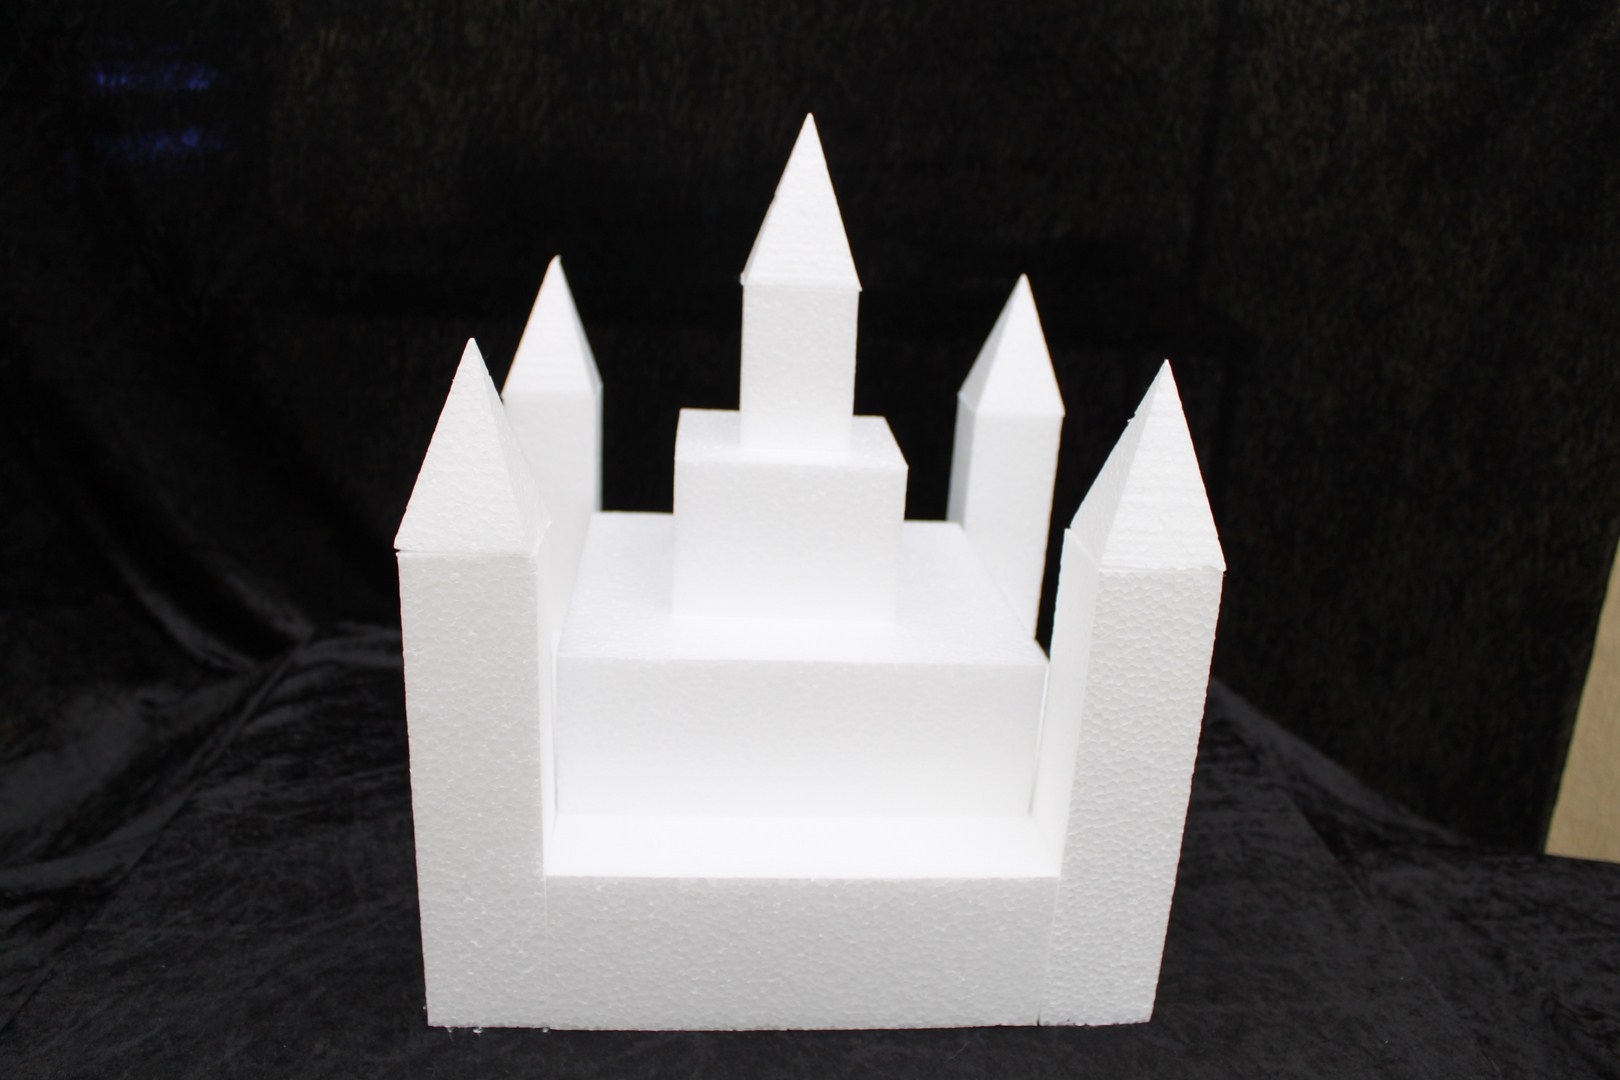 Castle cake dummy set 13 pcs - 30 x 30 cm, 35 cm high